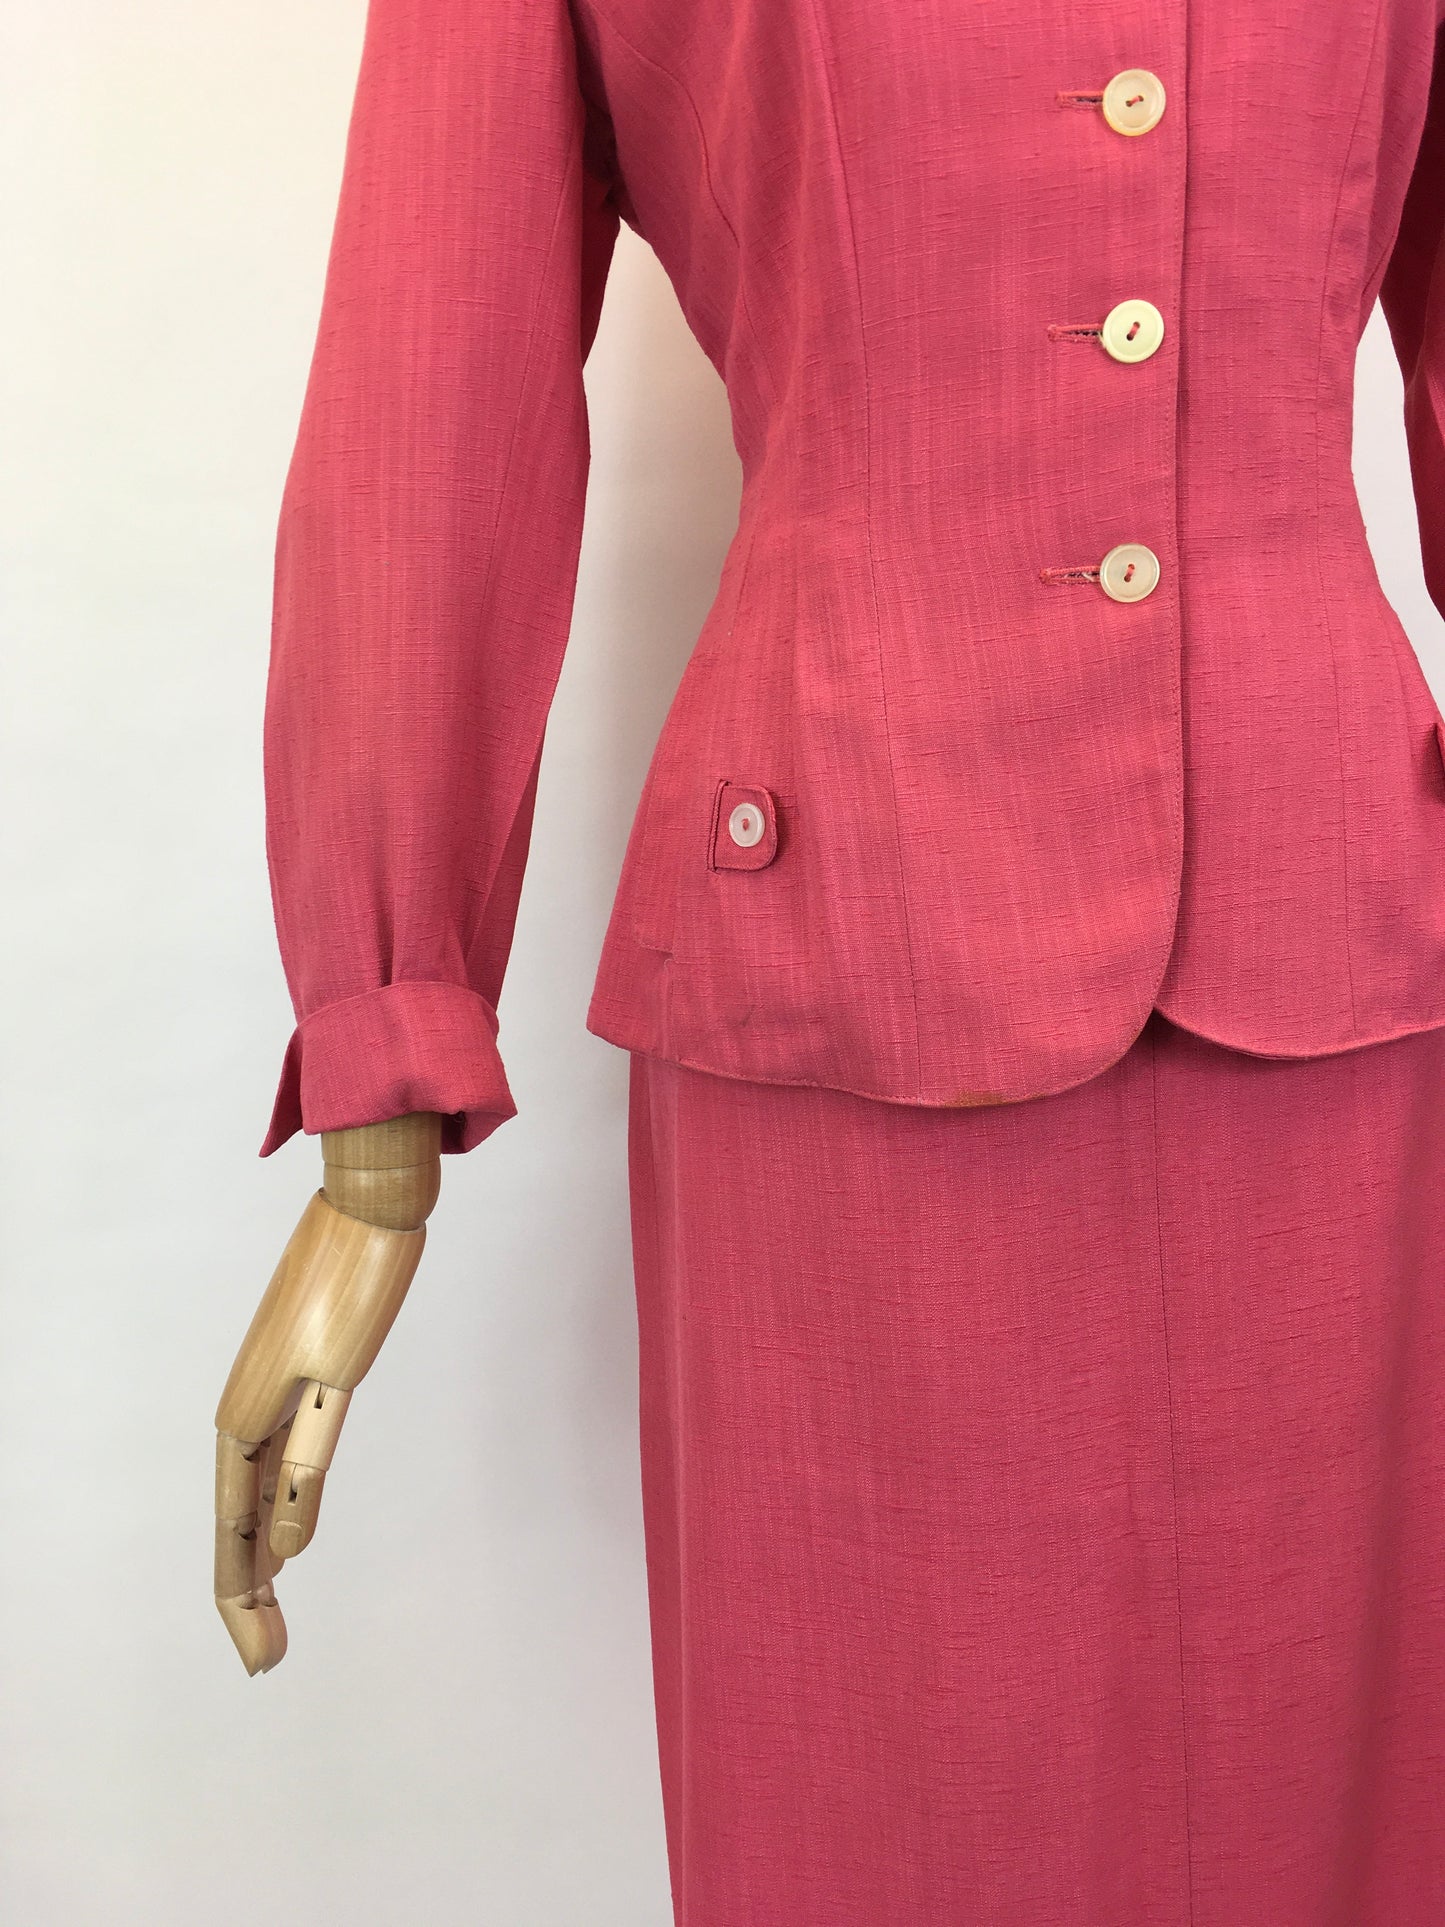 Original 1940’s Fabulous Bubblegum Pink 2pc Suit - In A Gorgeous Linen Fabric